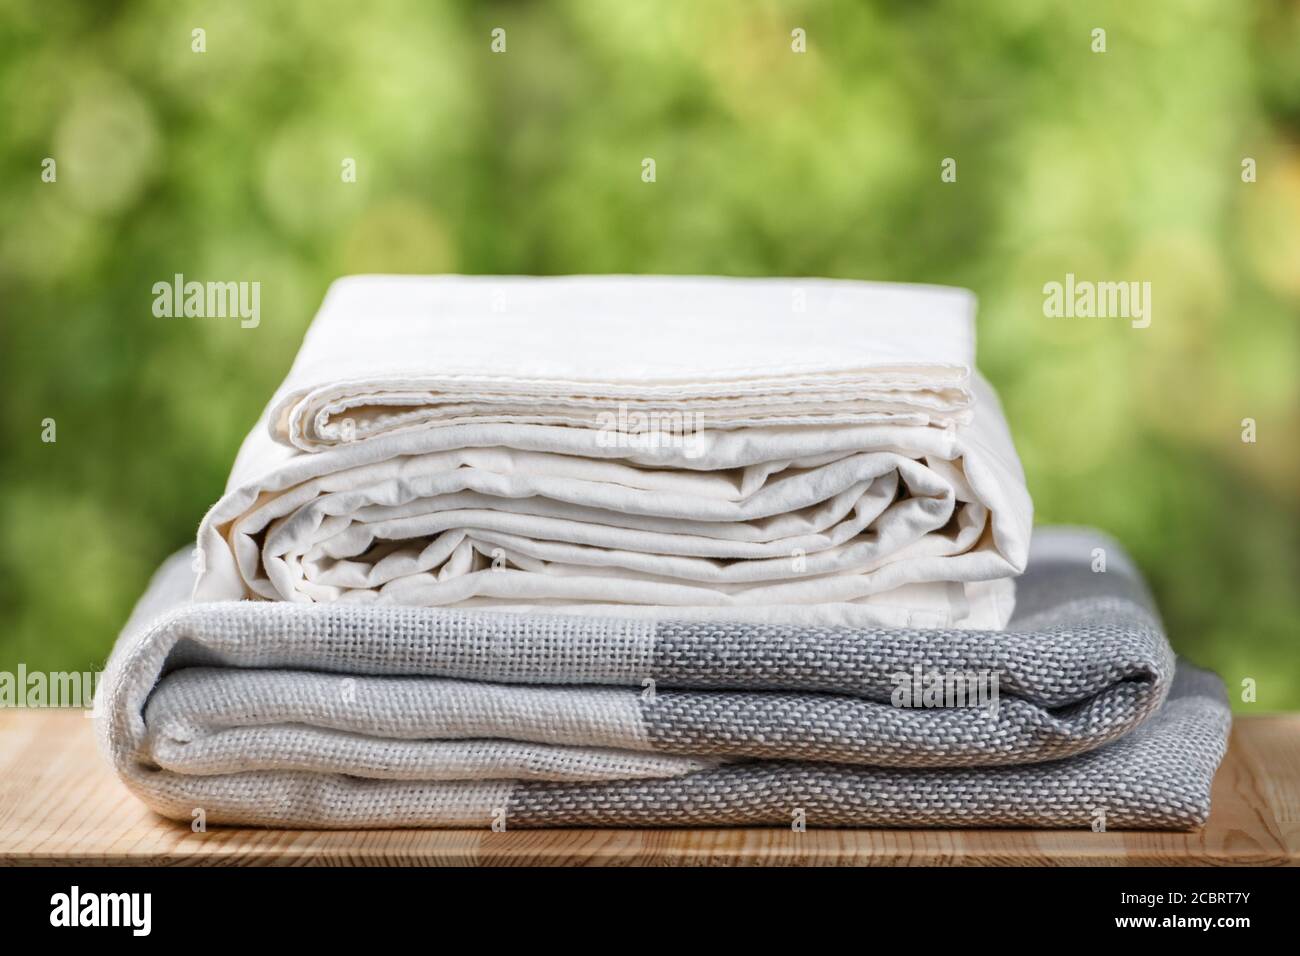 Ein Stapel gefaltetes Bettzeug. Einfarbig grau weiß gradient karierten Bettlaken Textil auf verwischten Laub Hintergrund gesetzt. Stockfoto